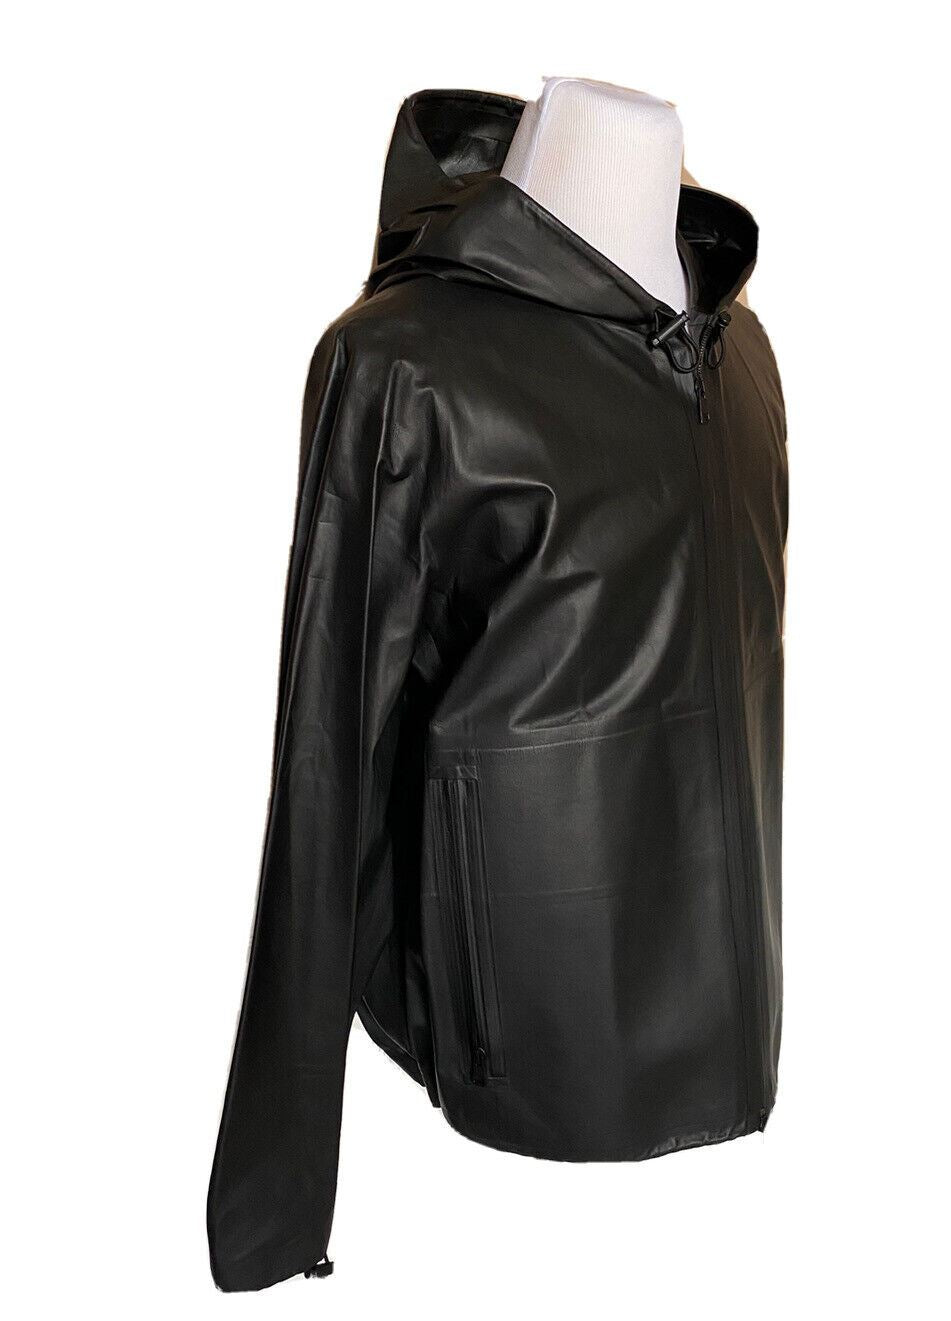 NWT $5900 Bottega Veneta Мужская легкая куртка из телячьей кожи с капюшоном Черная 42 США